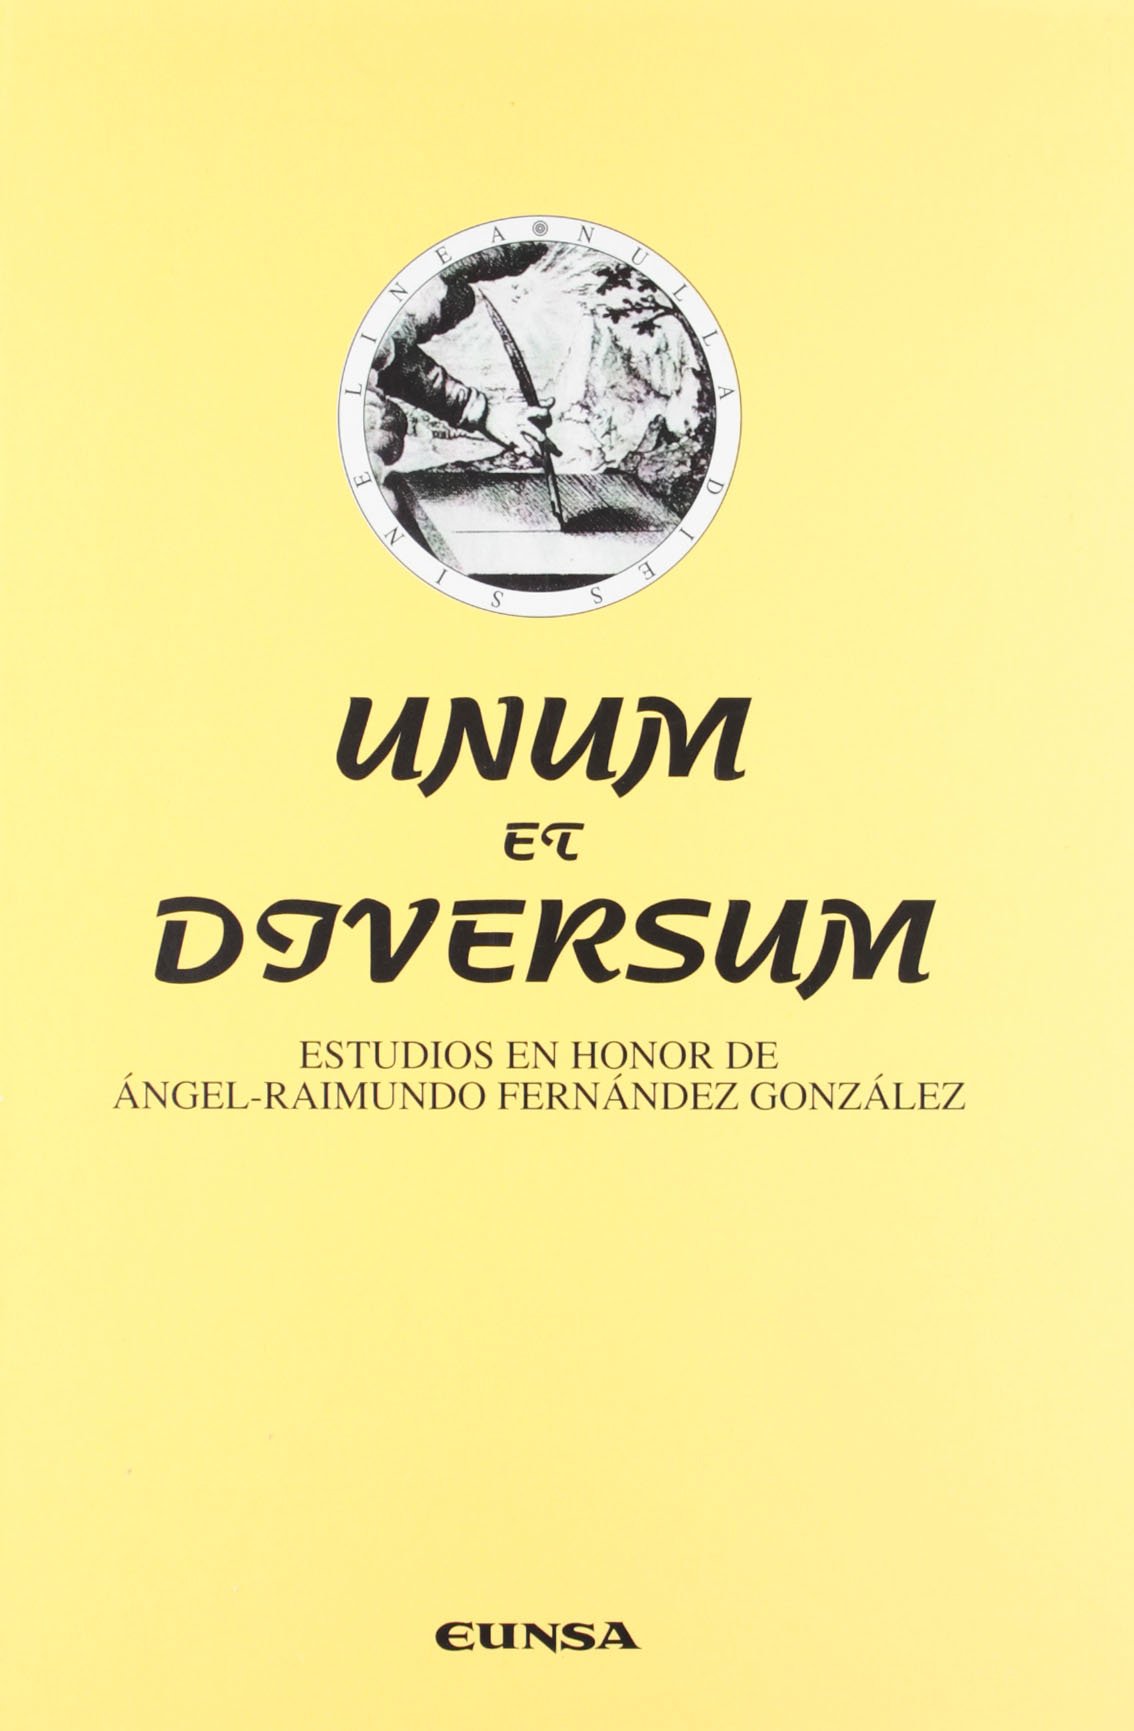 Imagen de portada del libro Unum et diversum